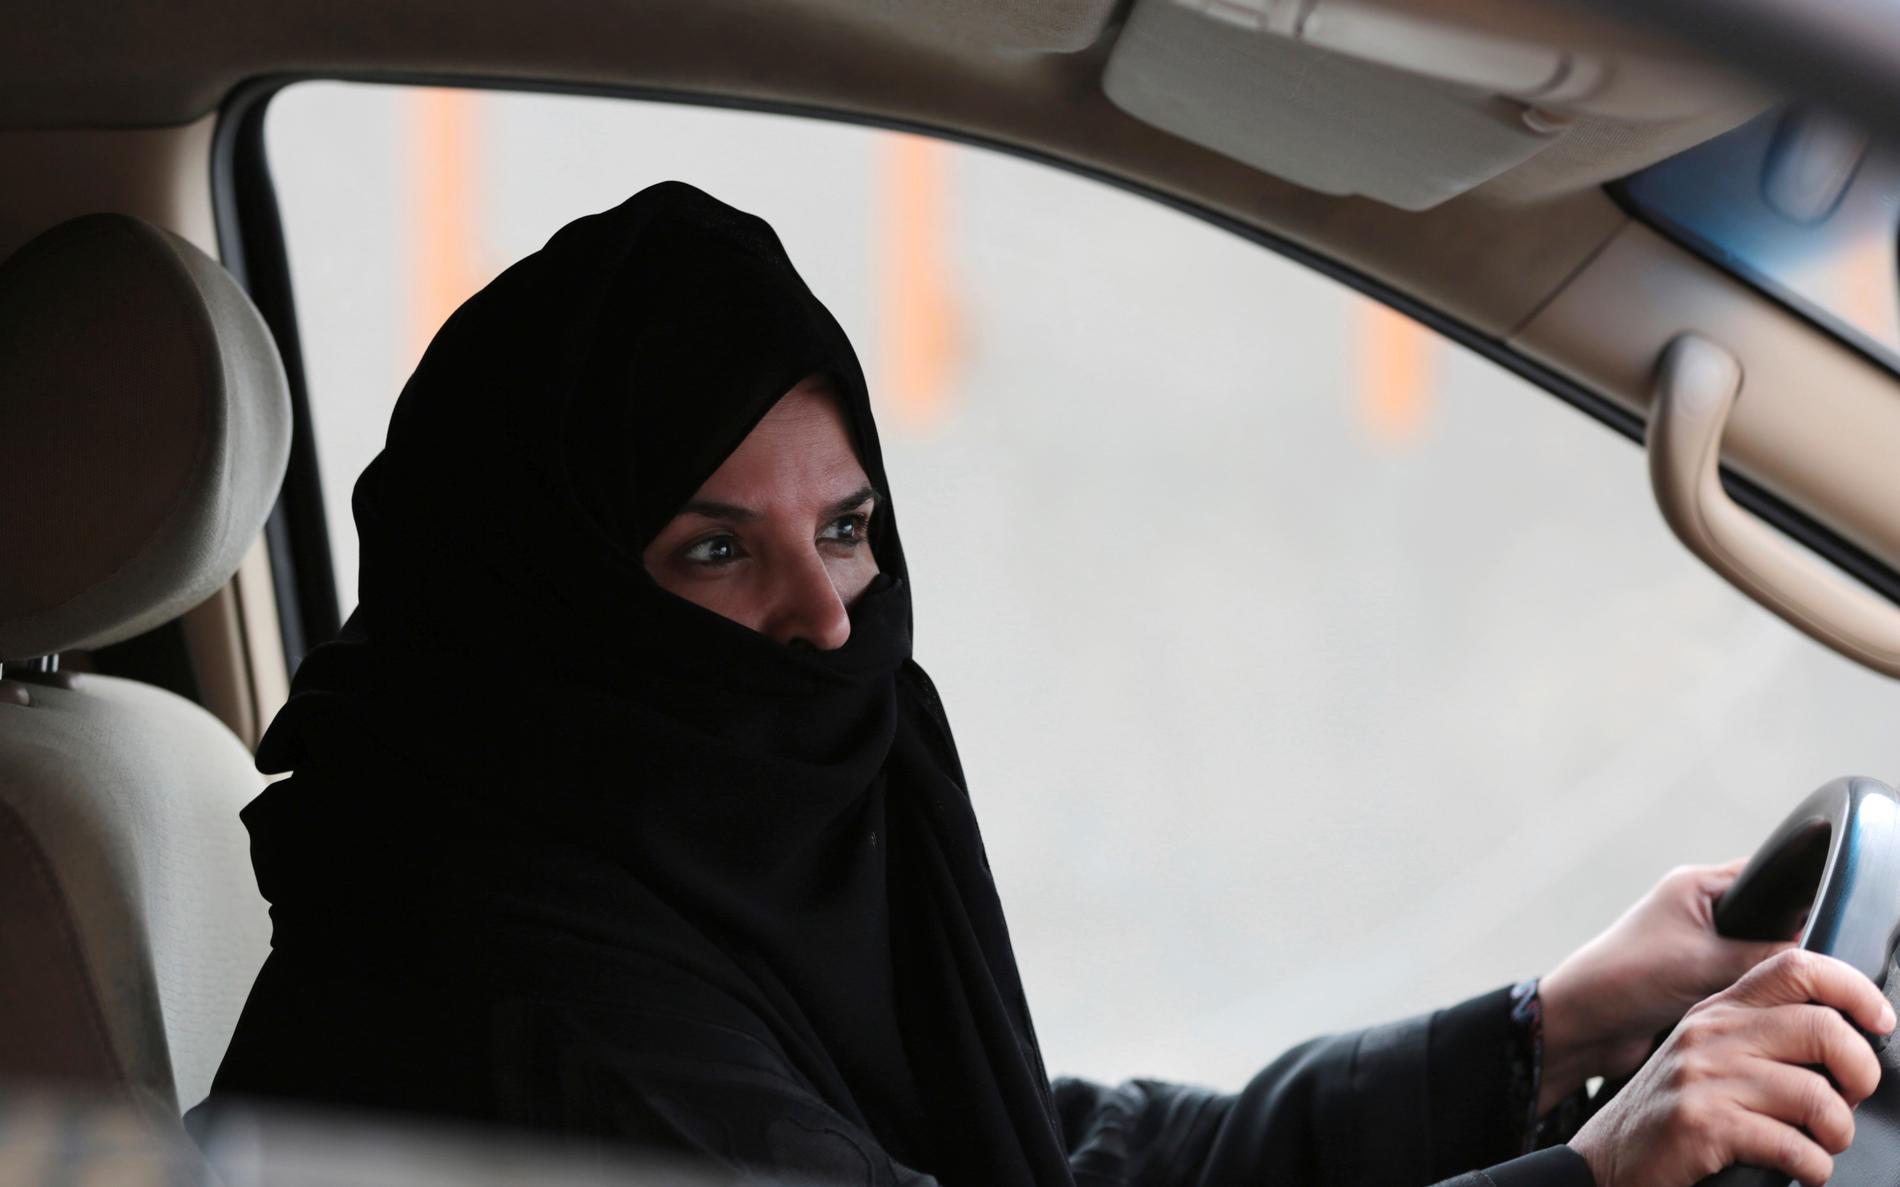 Kvinnliga aktivister som kampanjat för rätten att köra bil i Saudiarabien har gripits och torterats, enligt Amnesty International. Arkivbild.